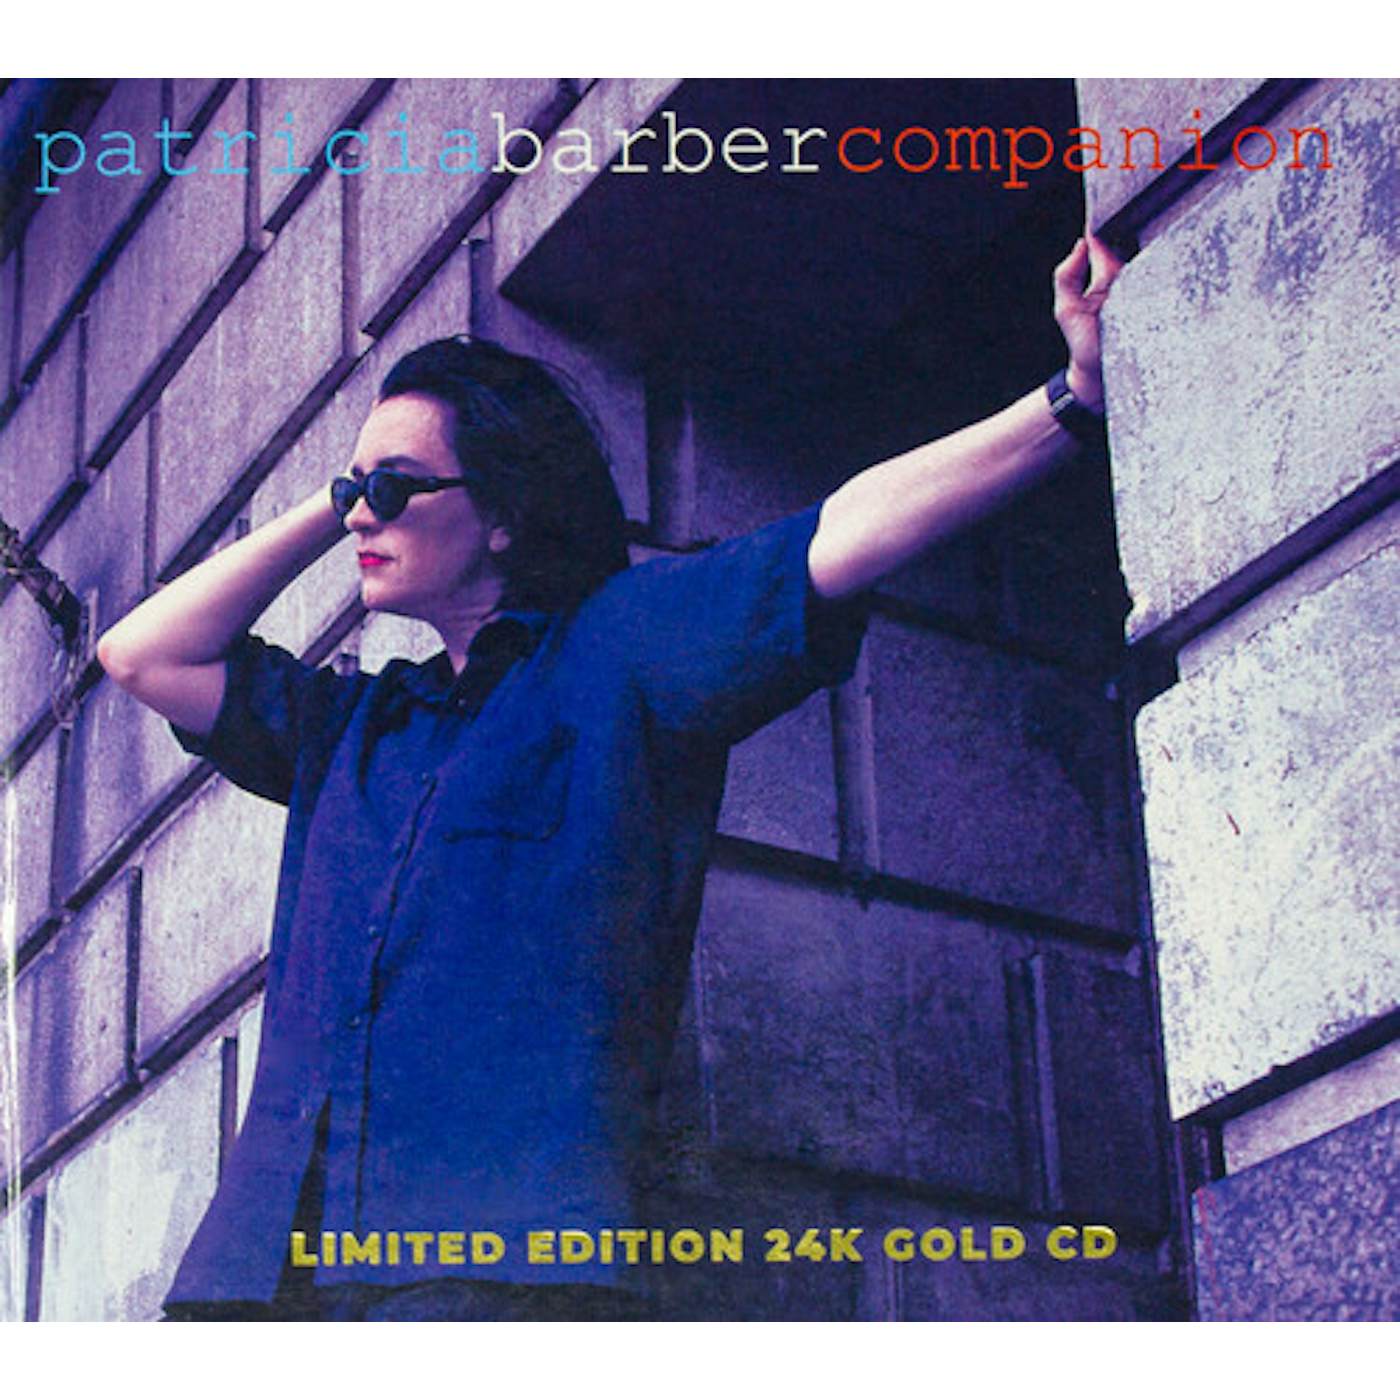 Patricia Barber COMPANION CD